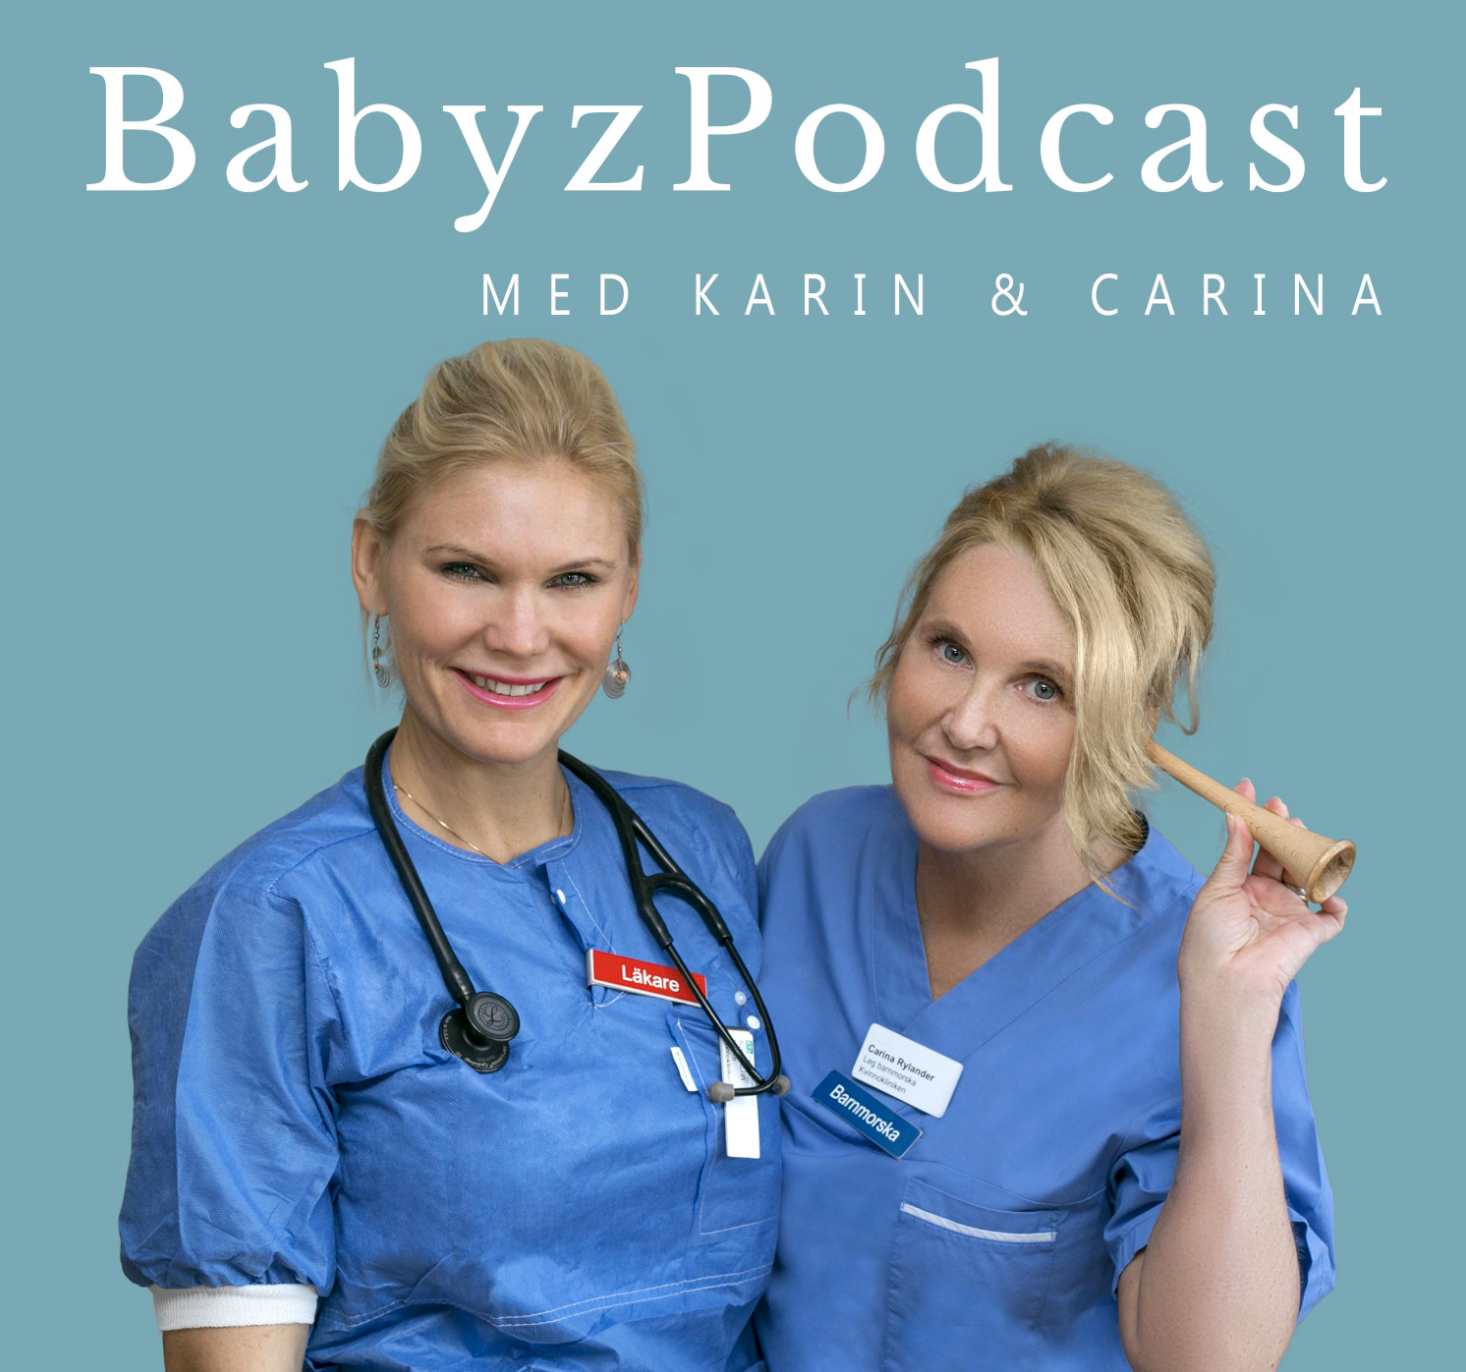 Poddcast bäckensmärta under graviditet del 2